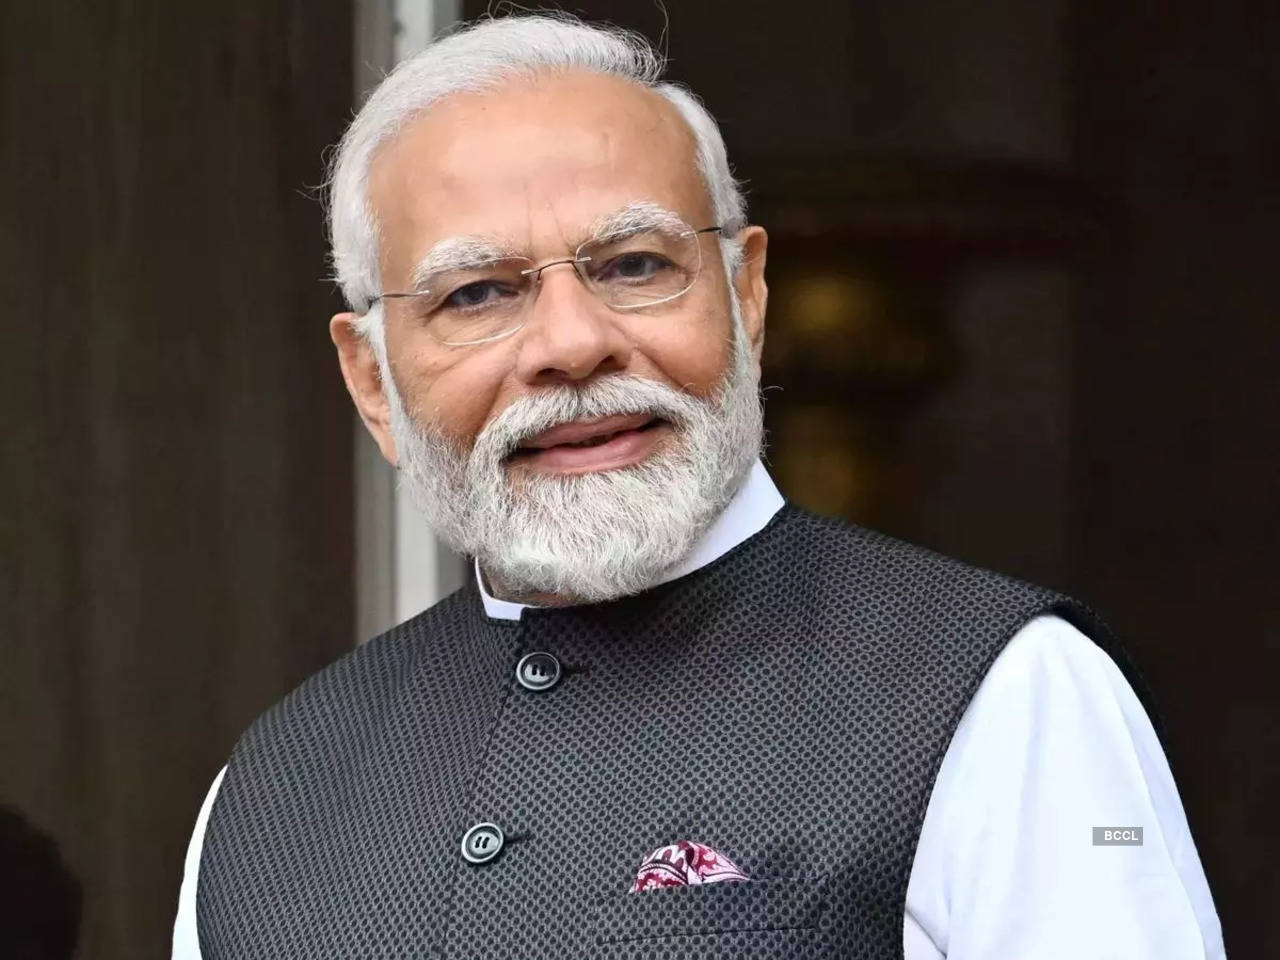 The Prime Minister, Shri Narendra Modi, has wished Shri